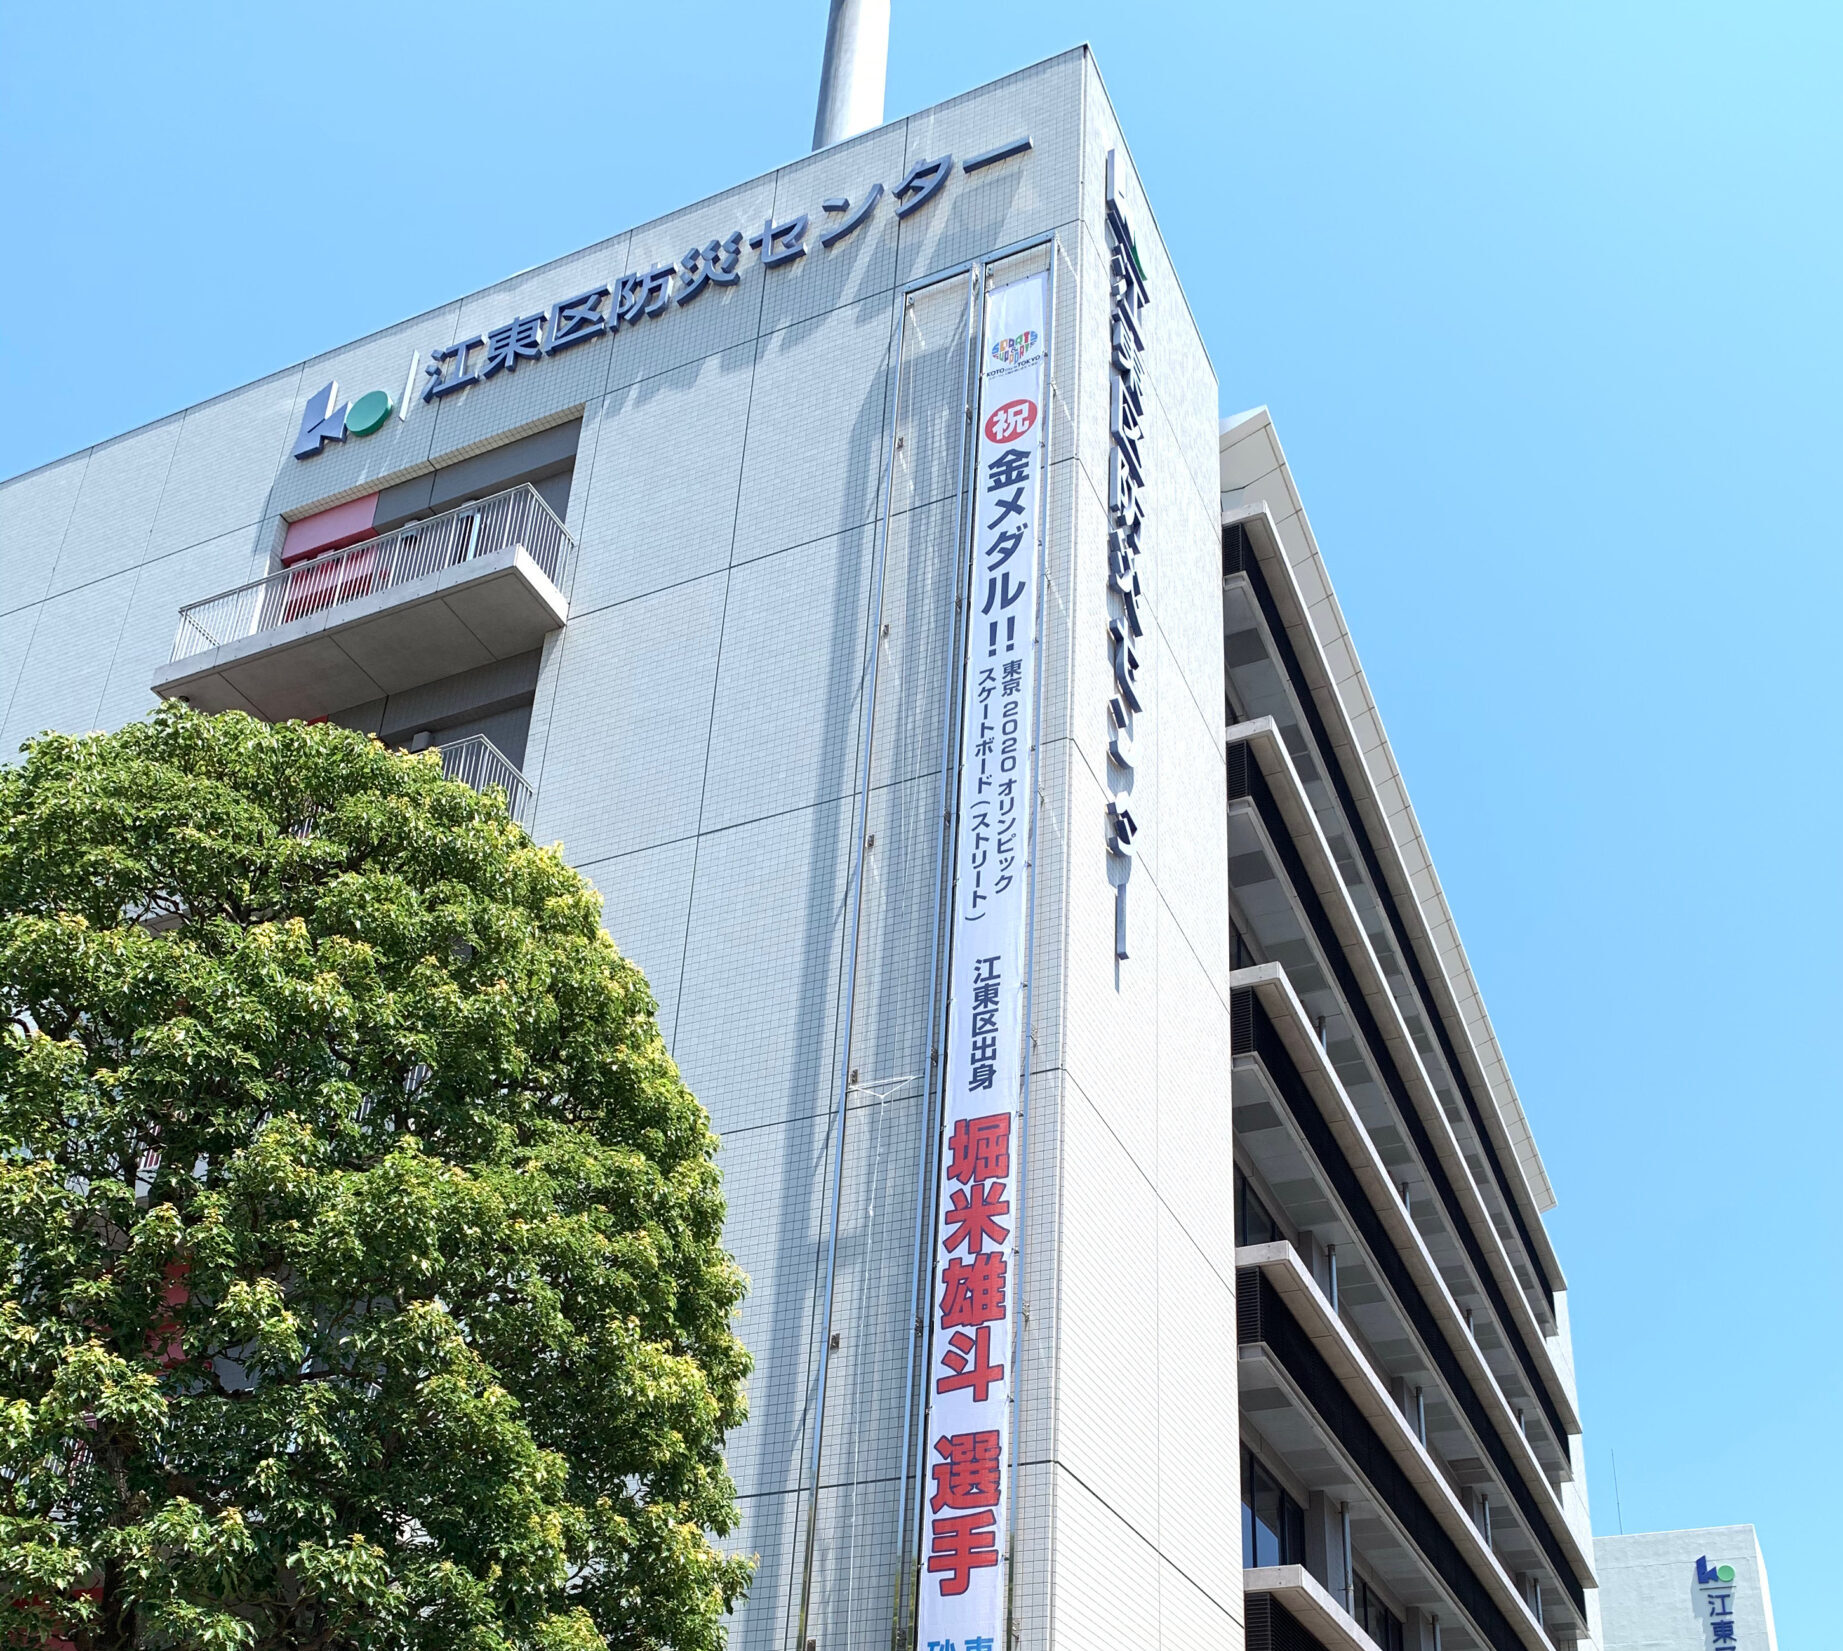 江東区防災センターに東京2020オリンピック金メダリスト堀米雄斗先週の祝勝垂れ幕が掲げられています